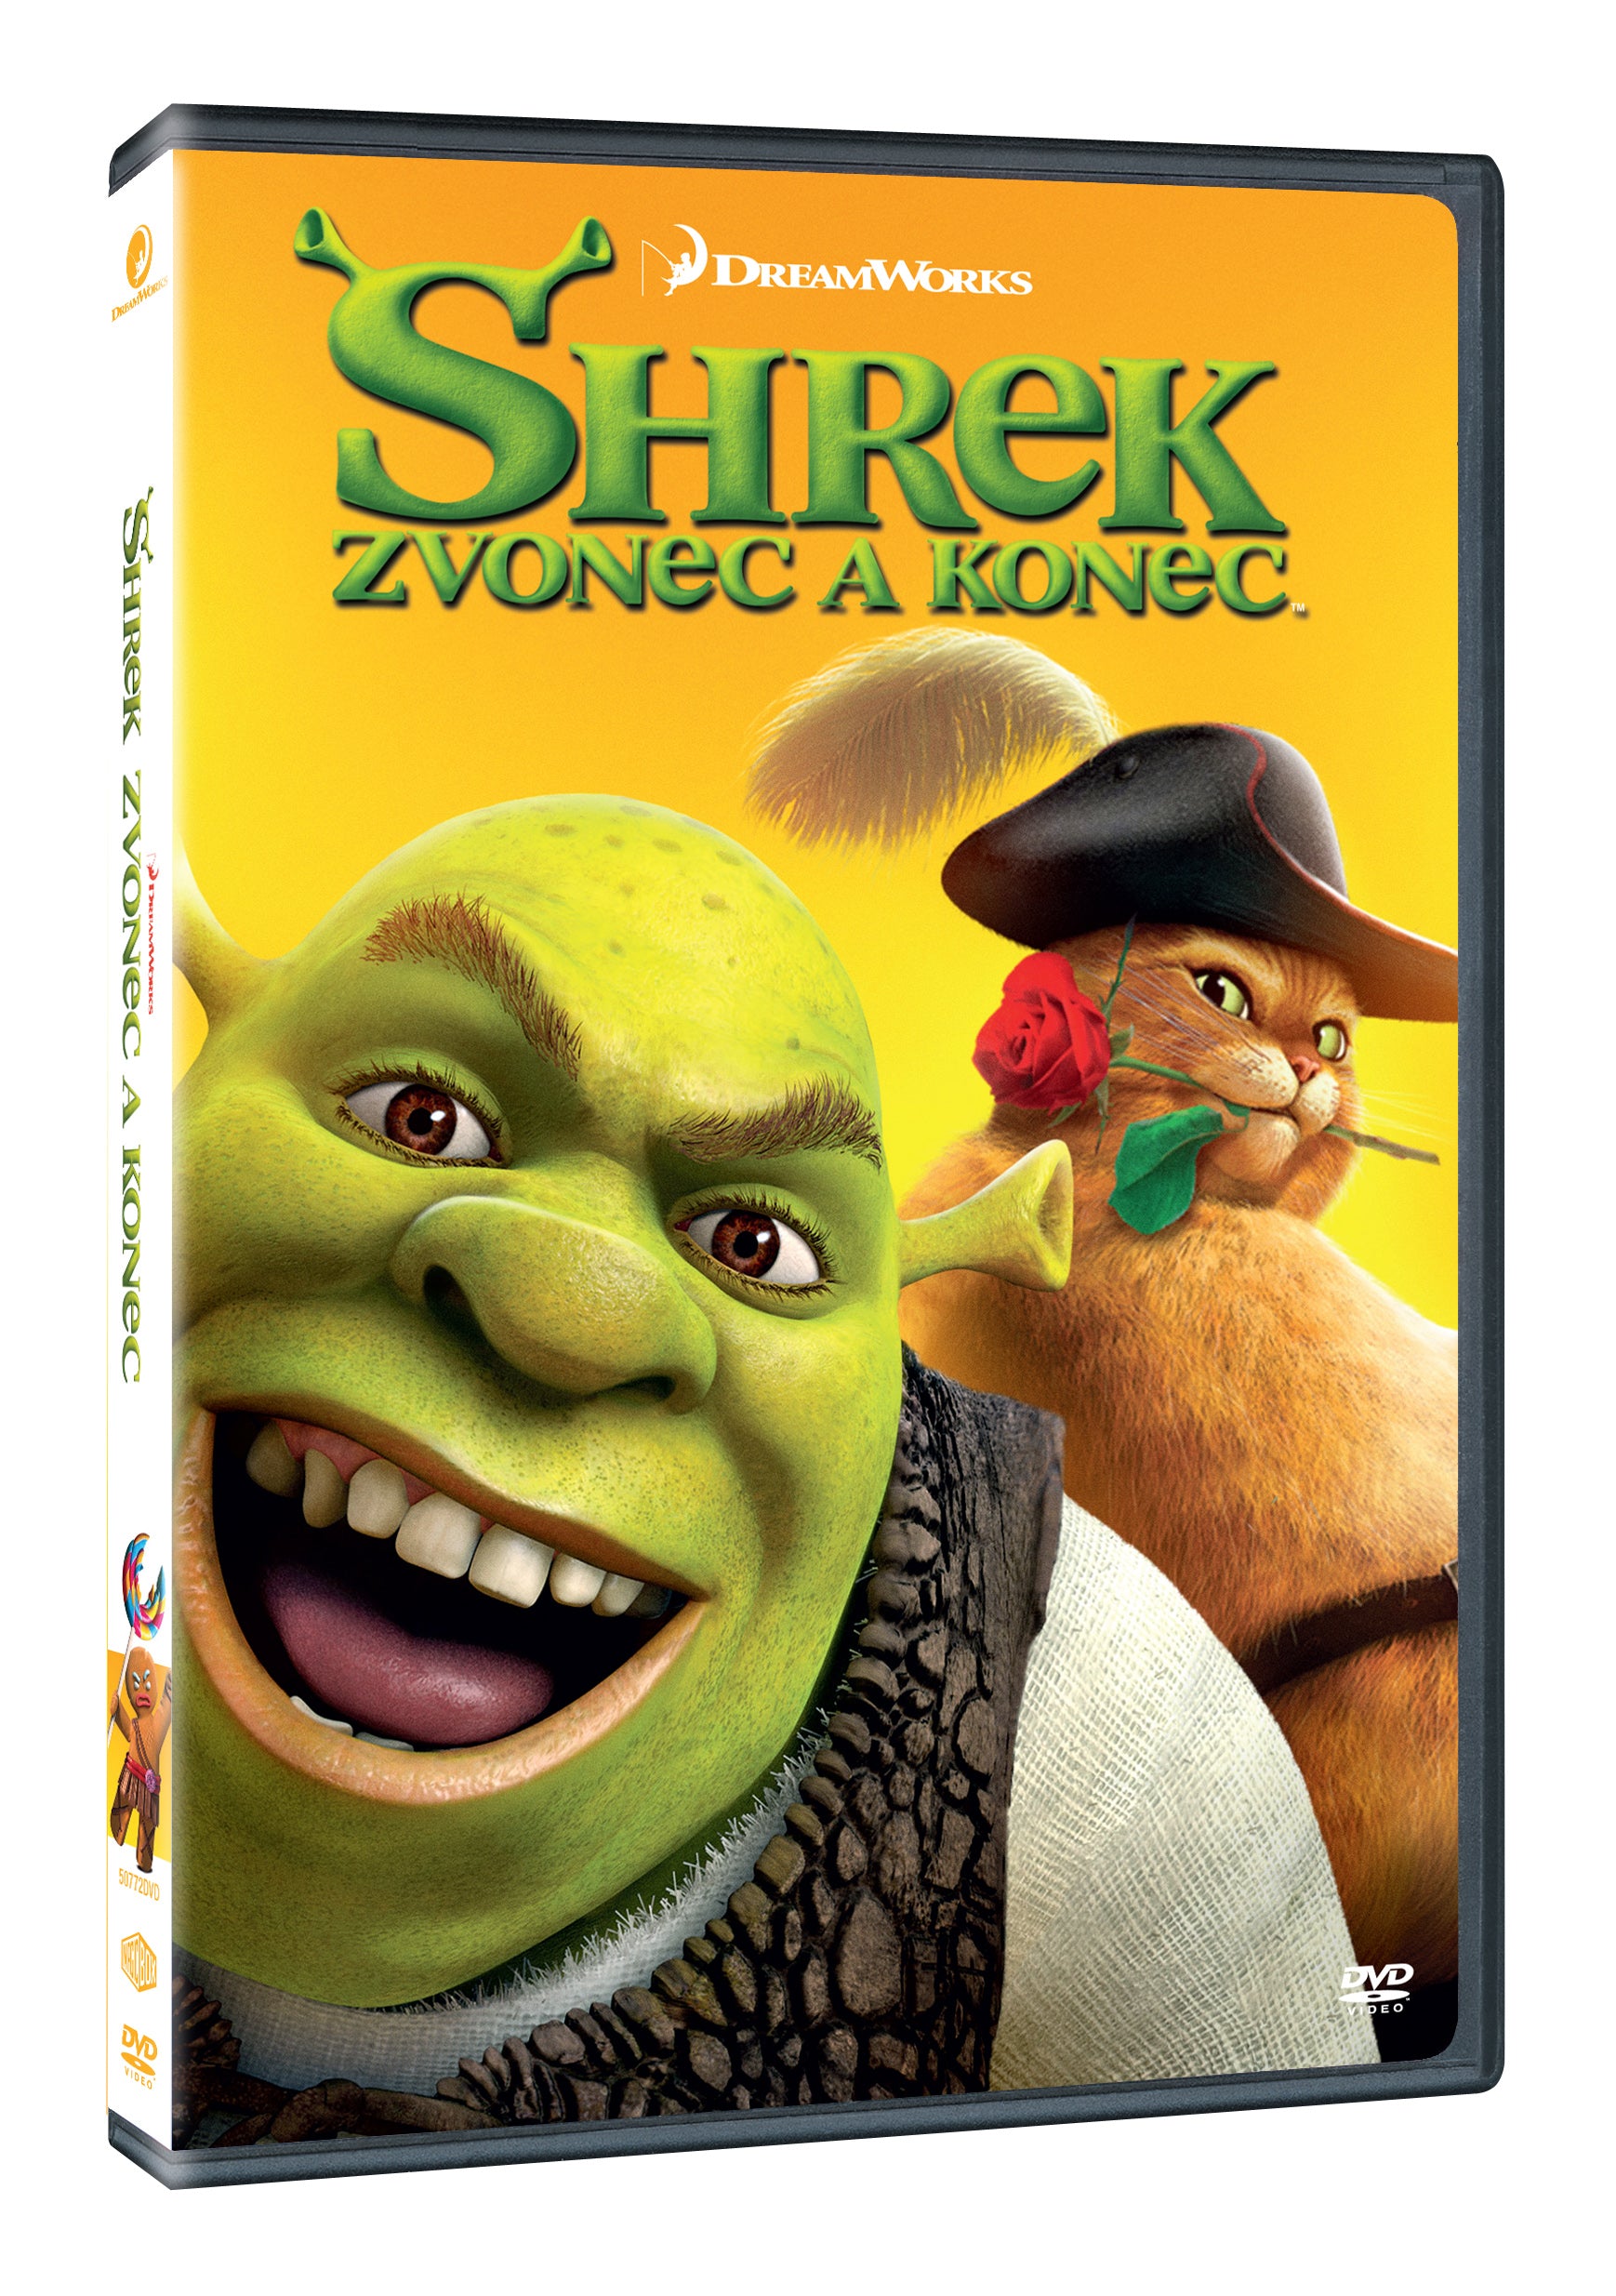 Shrek: Zvonec a konce / Shrek Forever After